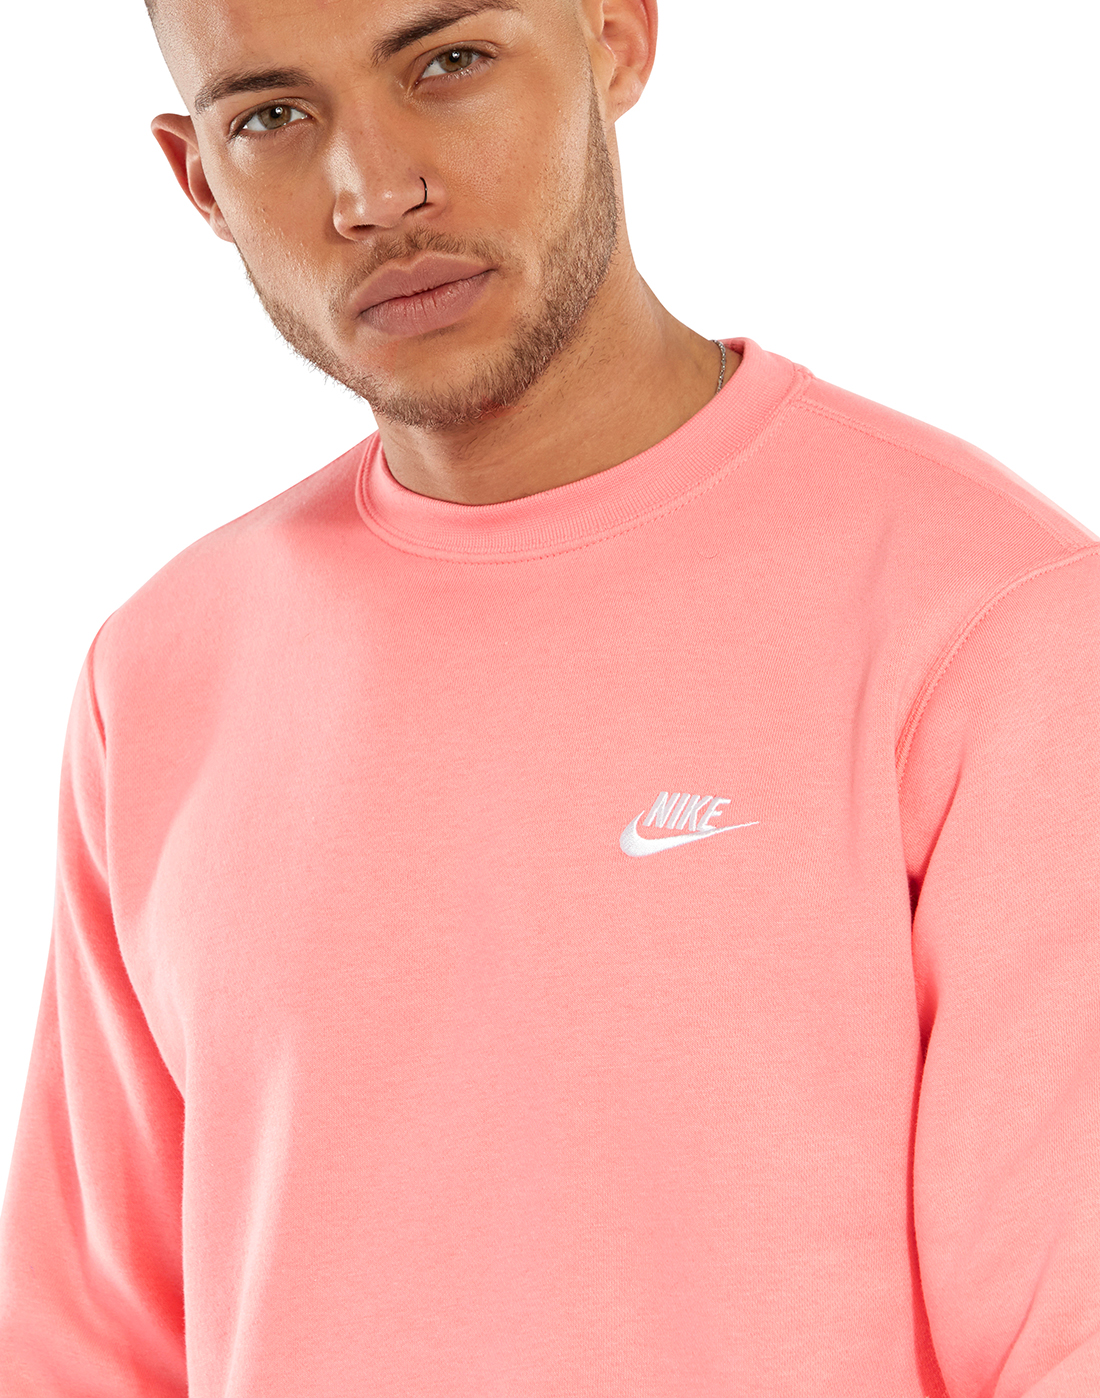 pink nike crew sweatshirt